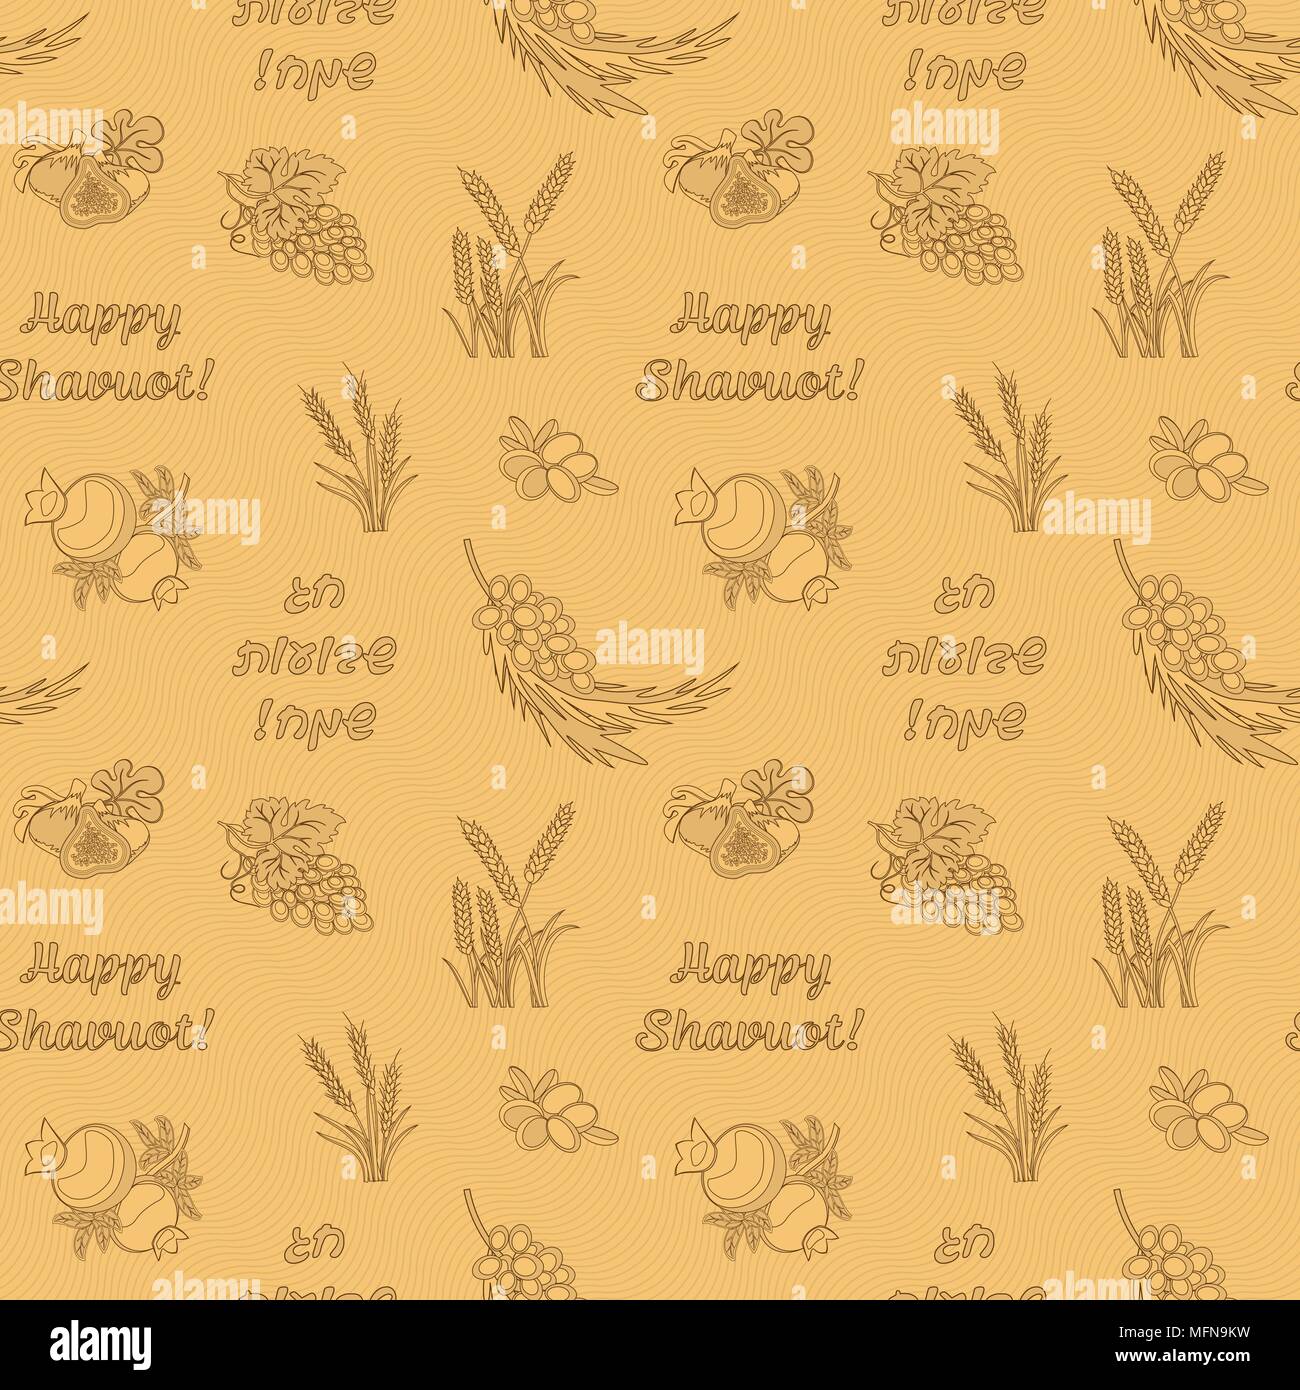 Sette specie di Shavuot, prodotti agricoli sulla festa ebraica con iscrizione felice Shavuot, seamless pattern. Illustrazione vettoriale EPS 10 Illustrazione Vettoriale